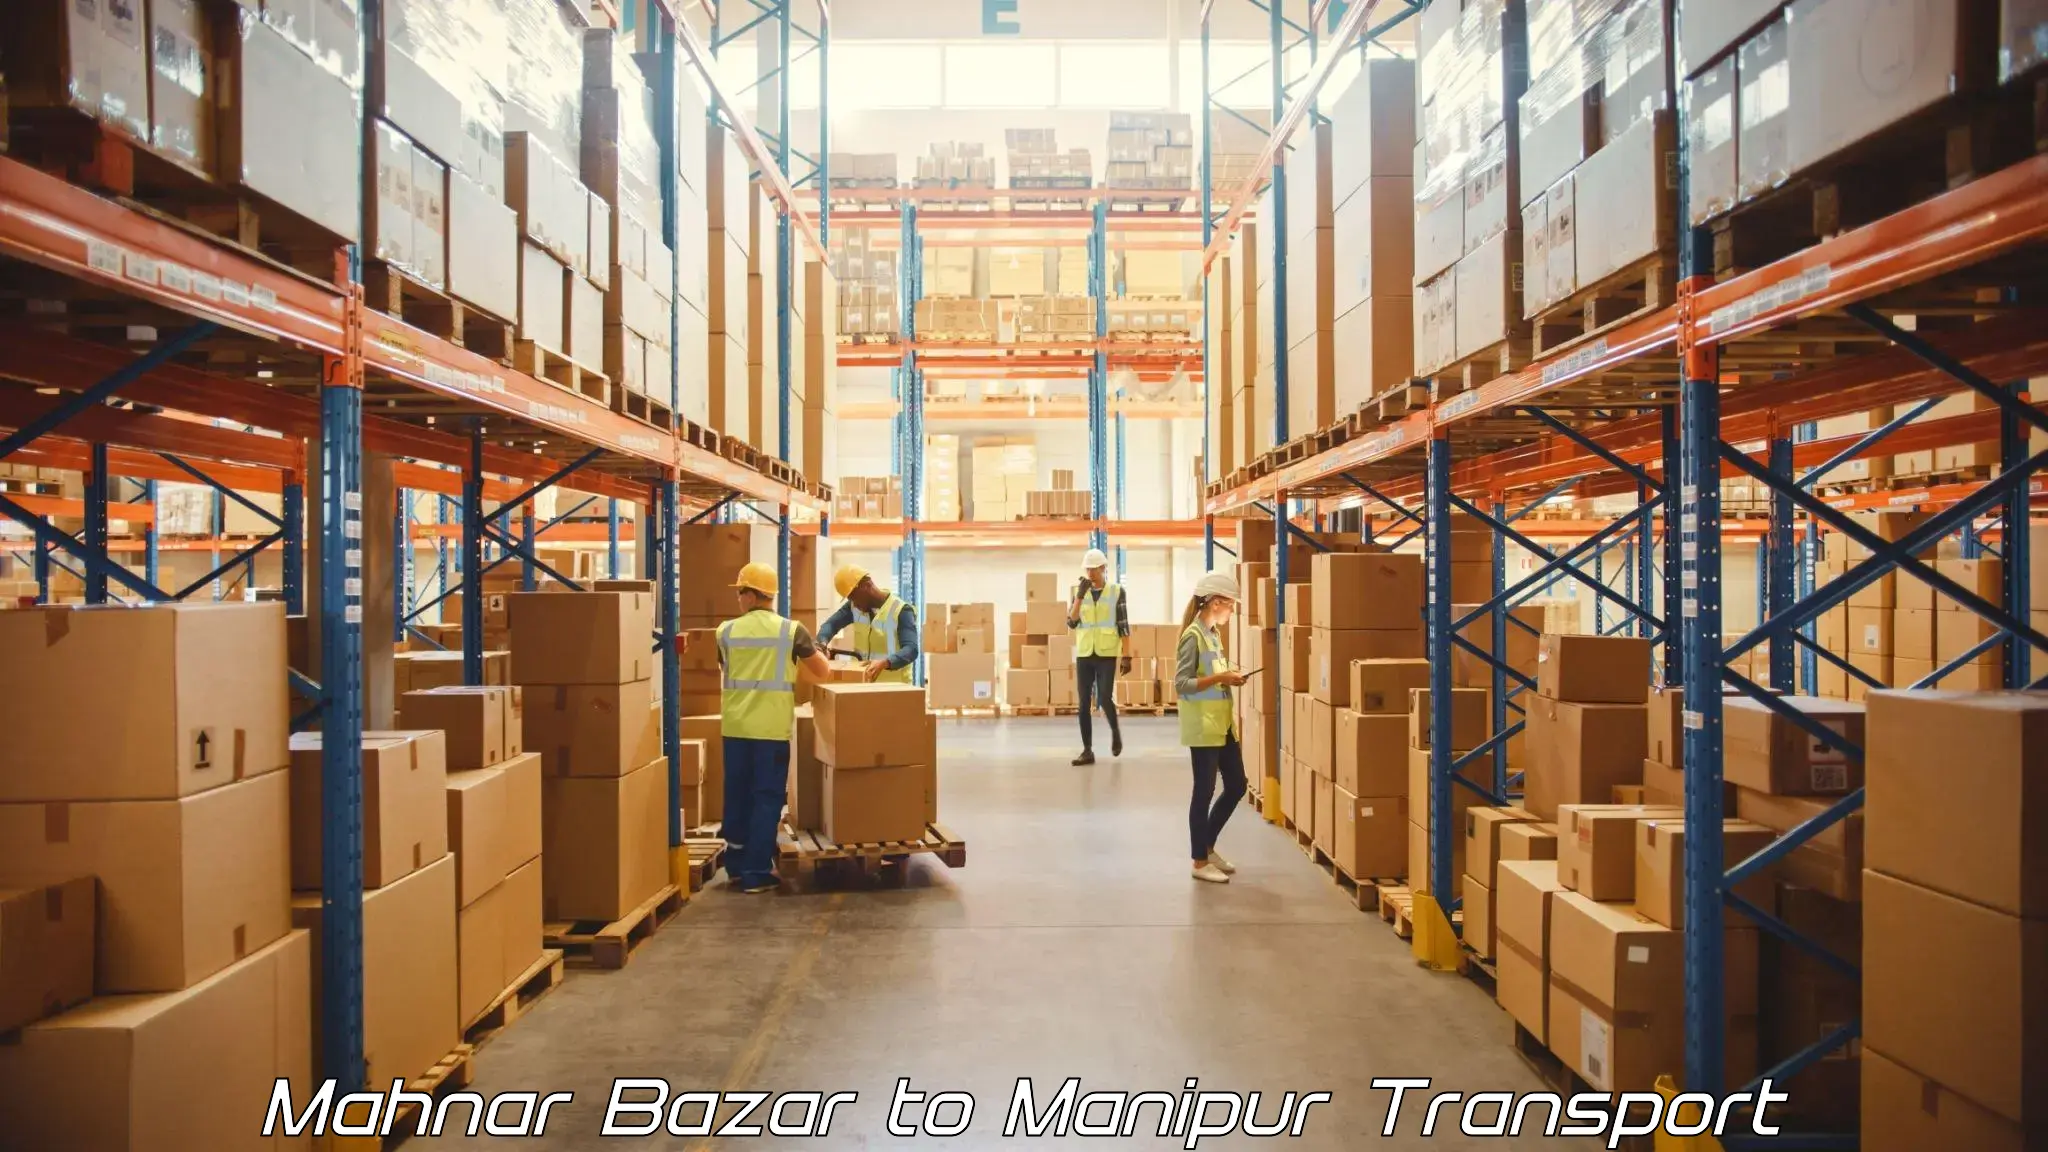 International cargo transportation services Mahnar Bazar to Senapati